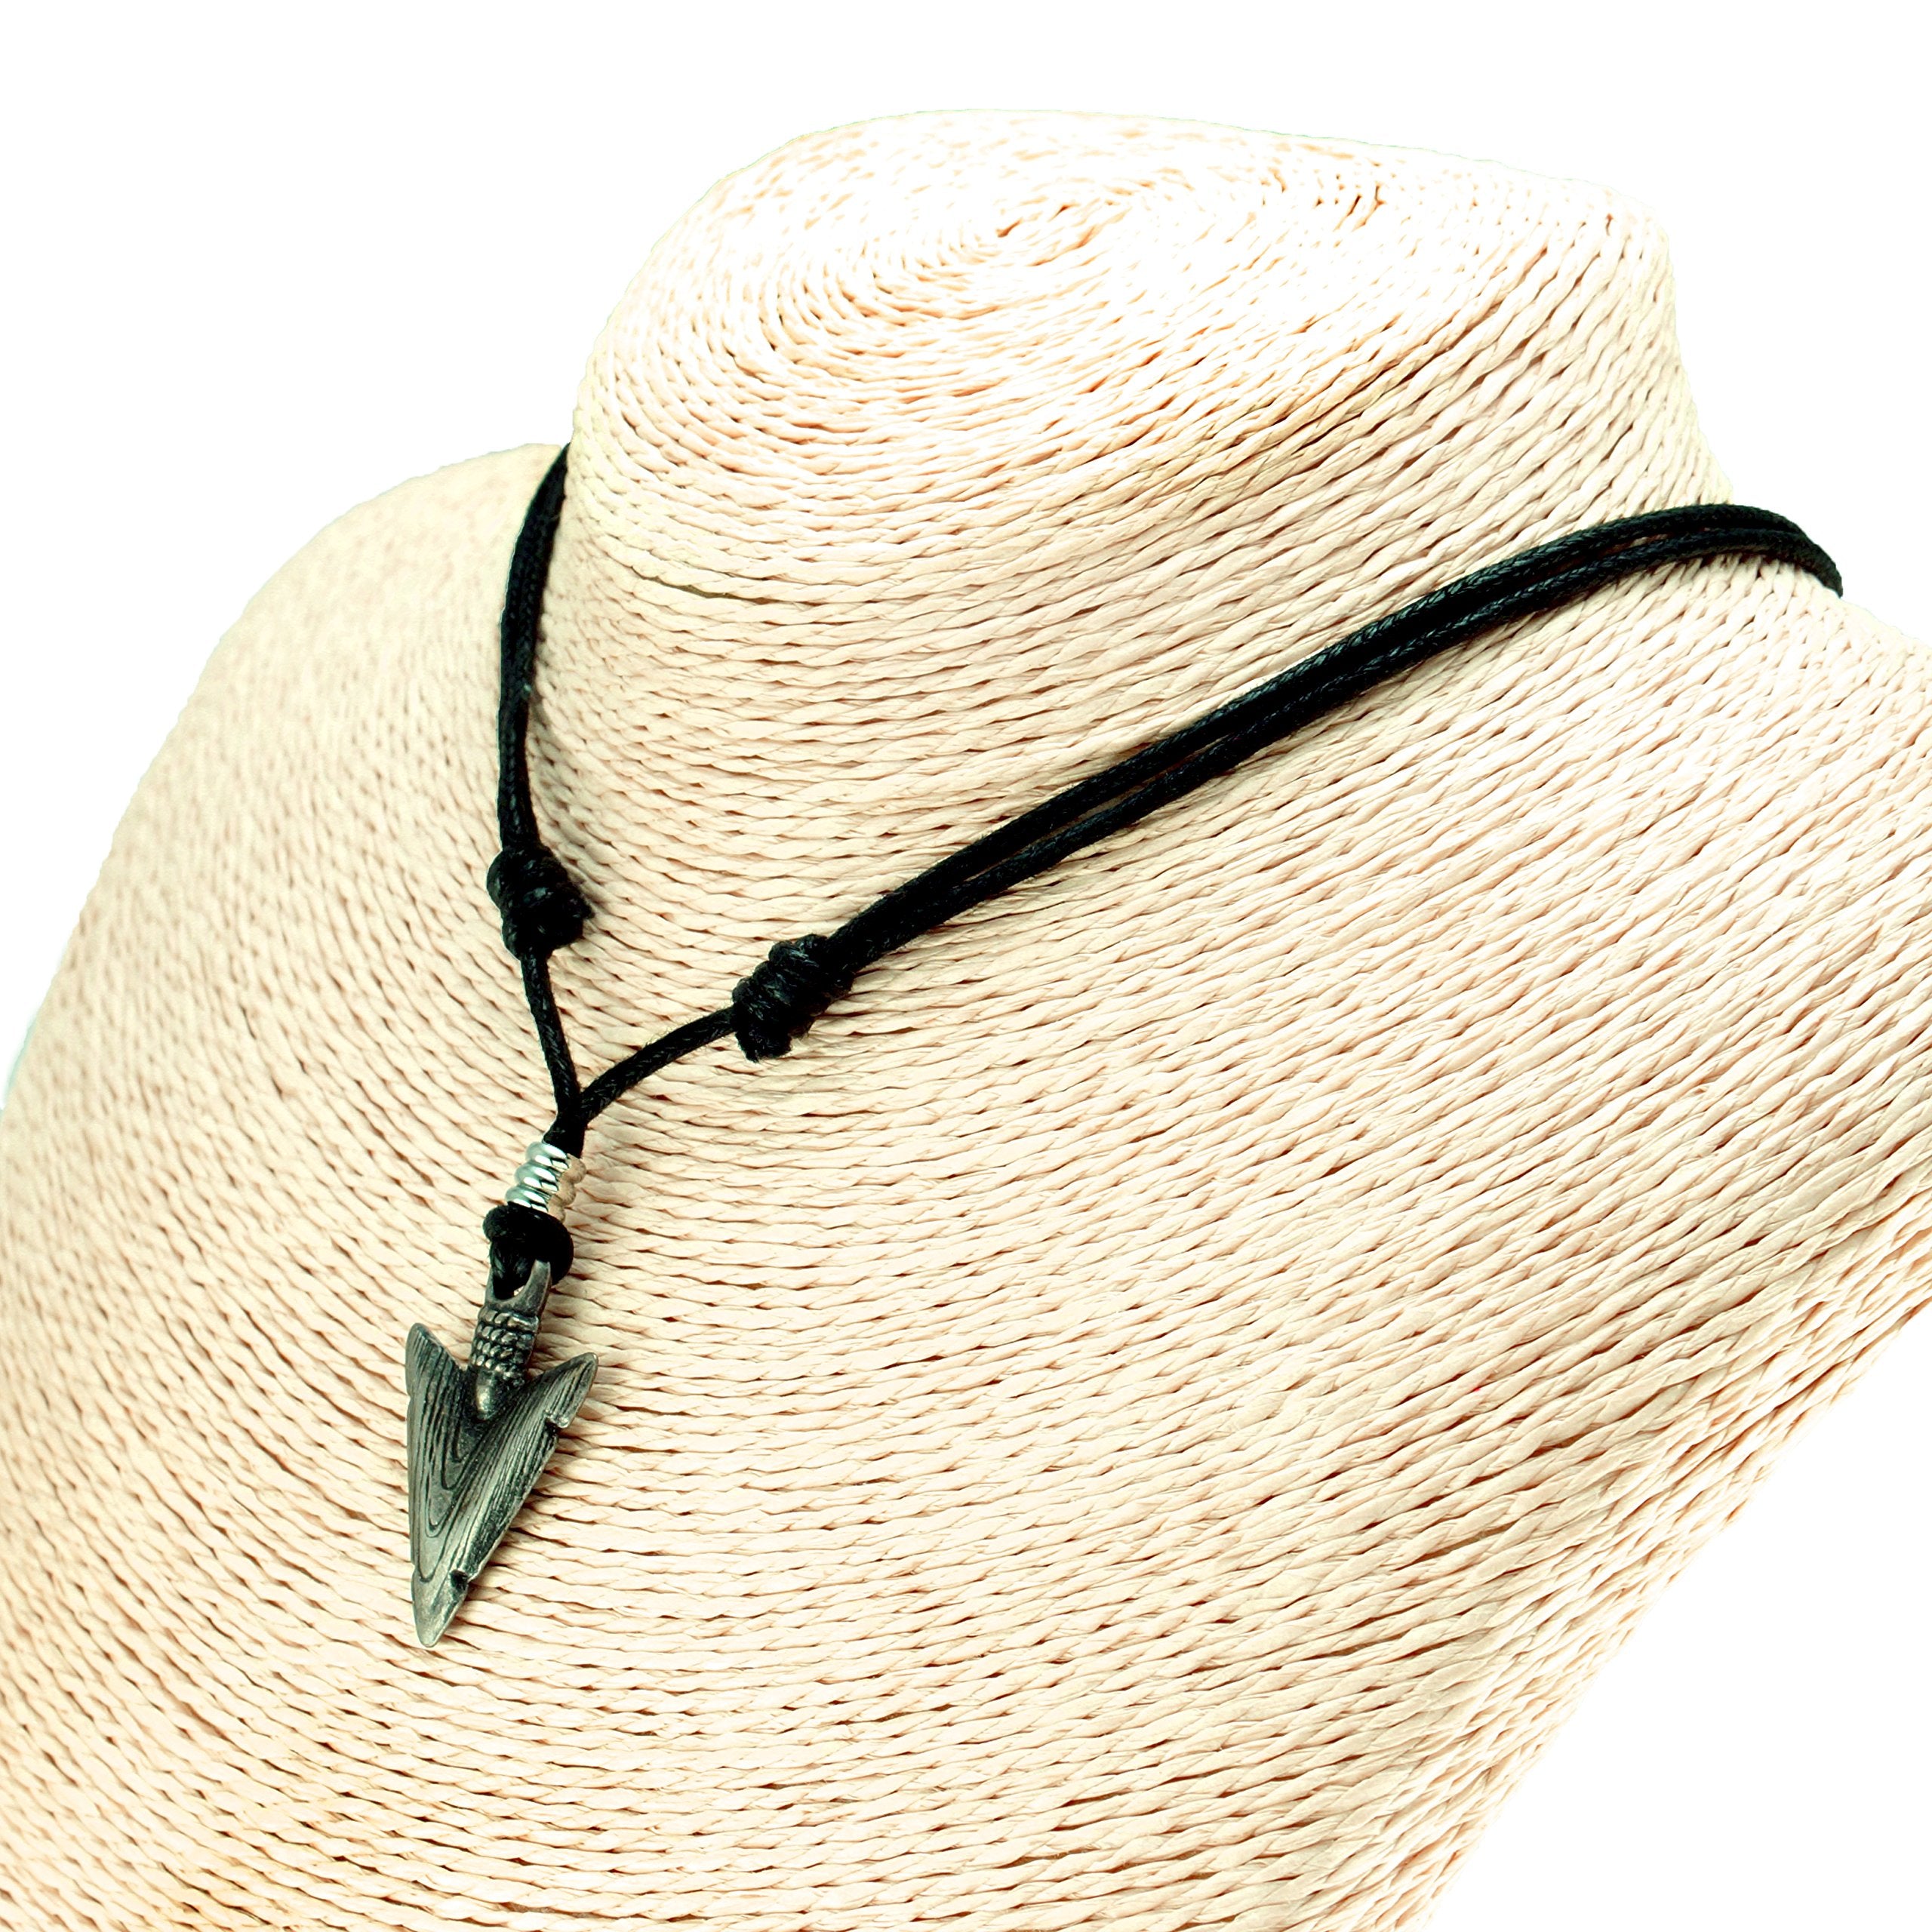 Arrowhead Pendant on Adjustable Rope Necklace